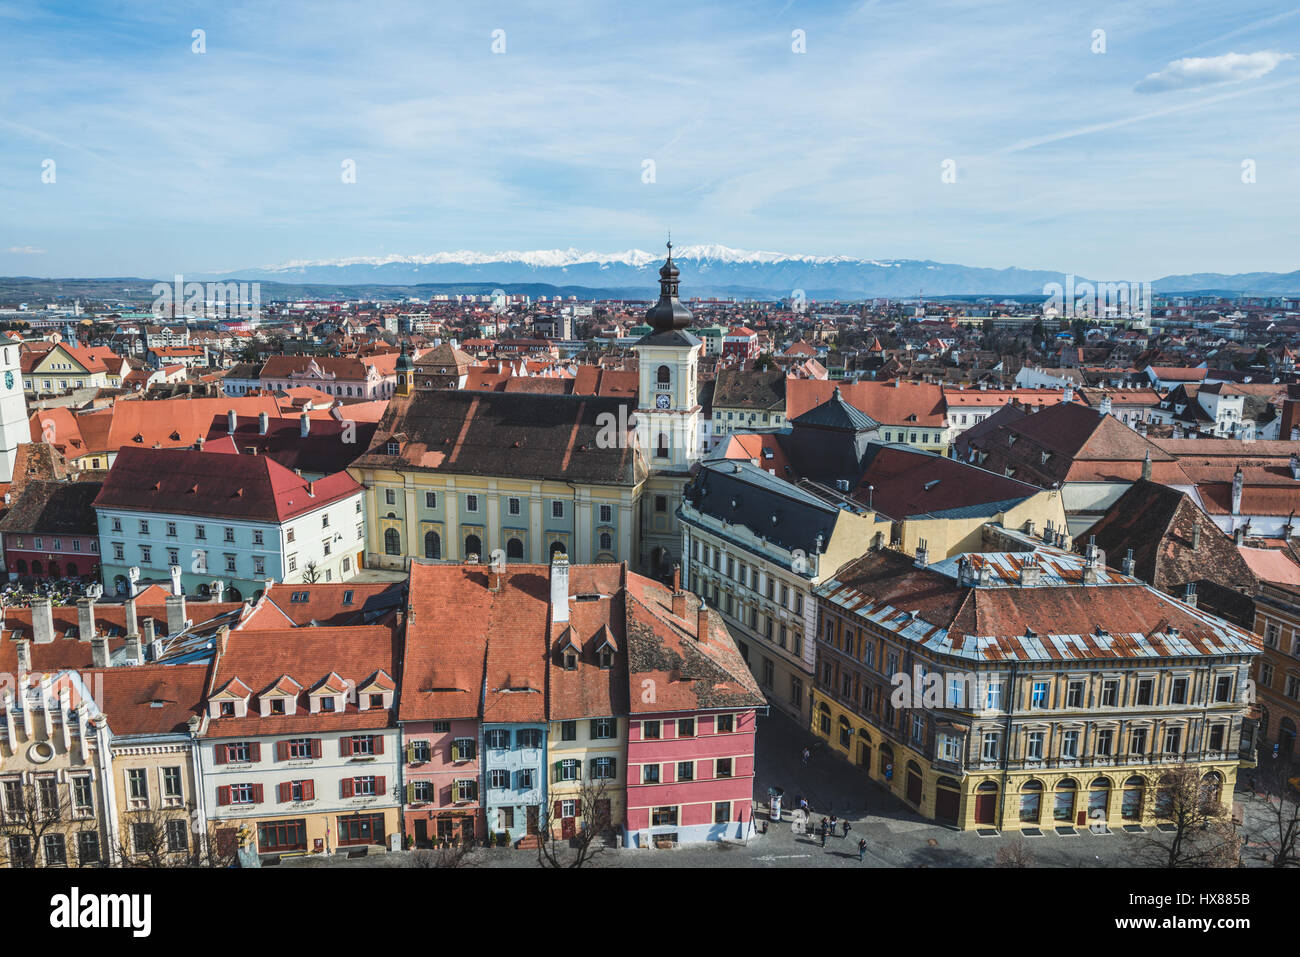 März 2017: das rumänische Stadt von Sibiu Foto: Cronos/Alessandro Bosio Stockfoto